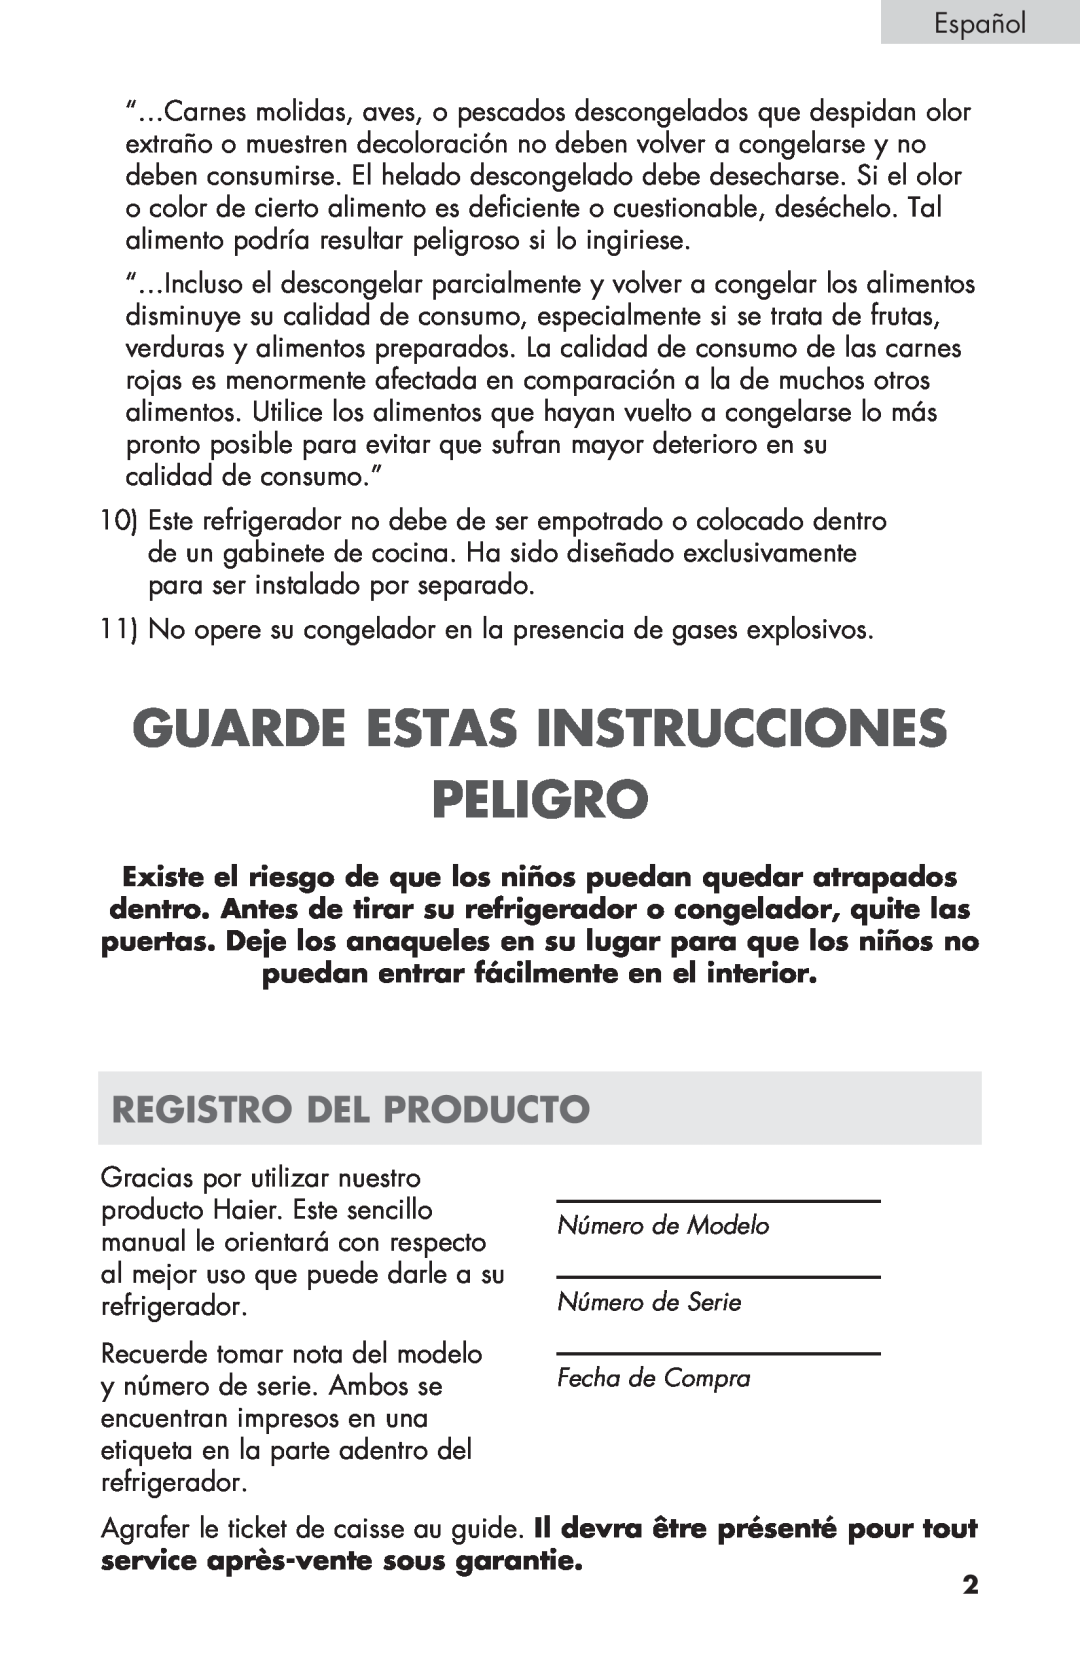 Haier ECR27B warranty Guarde Estas Instrucciones Peligro, Registro Del Producto 